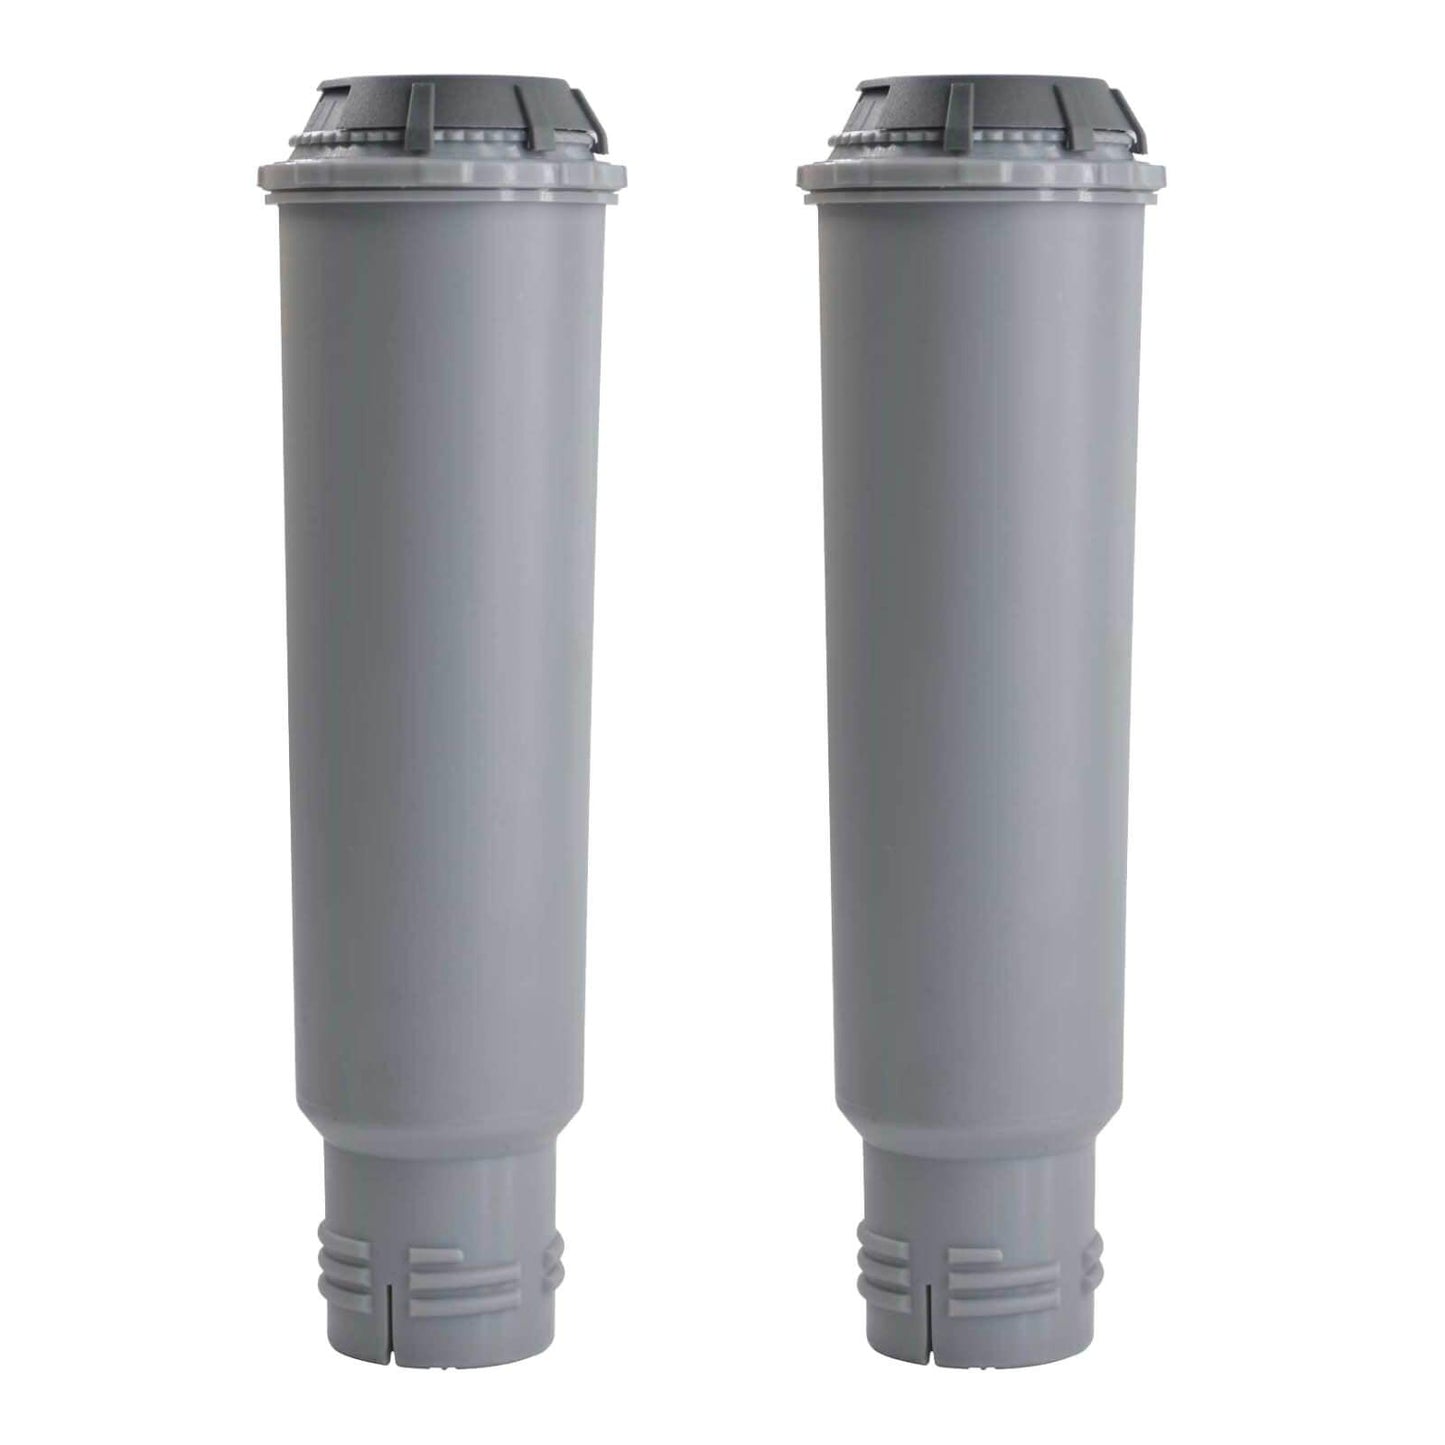 2x Claris Aqua Water Filter For Krups F088 KAF08801 XP2 XP4 XP5 XP7 XP9 461732 Sparesbarn